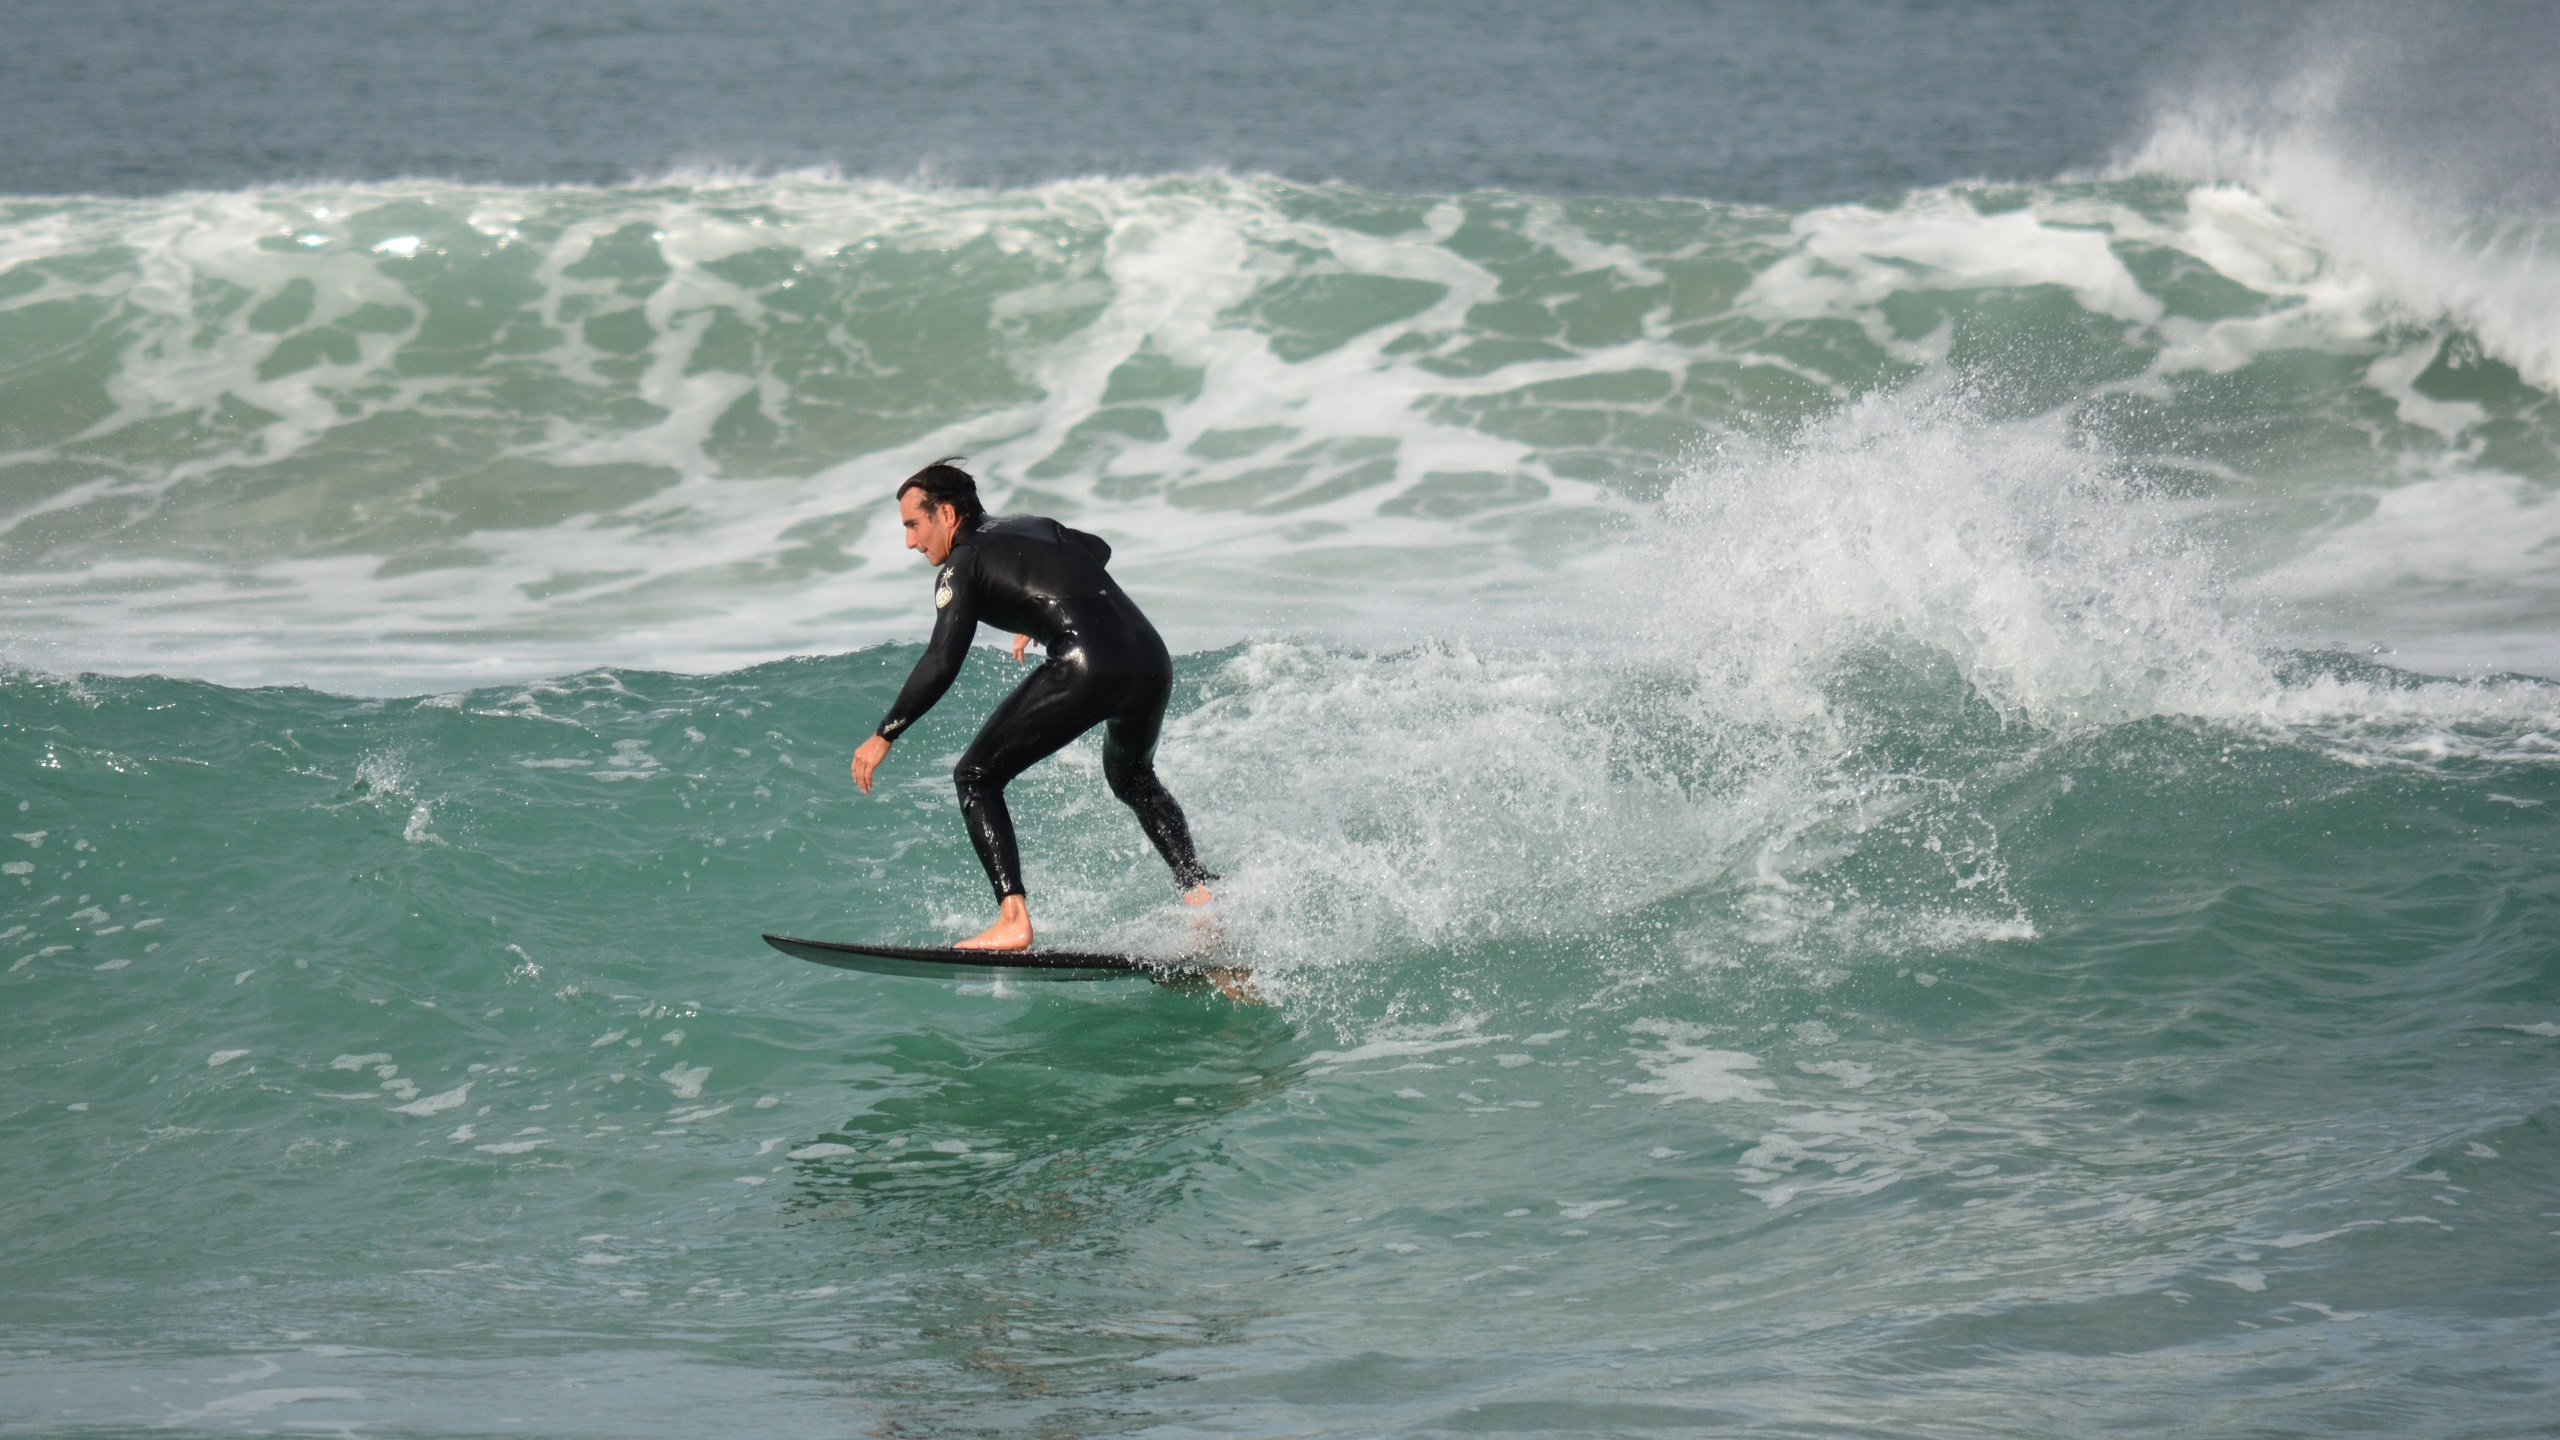 Ocean Surfer Surfing Wave 2560x1440